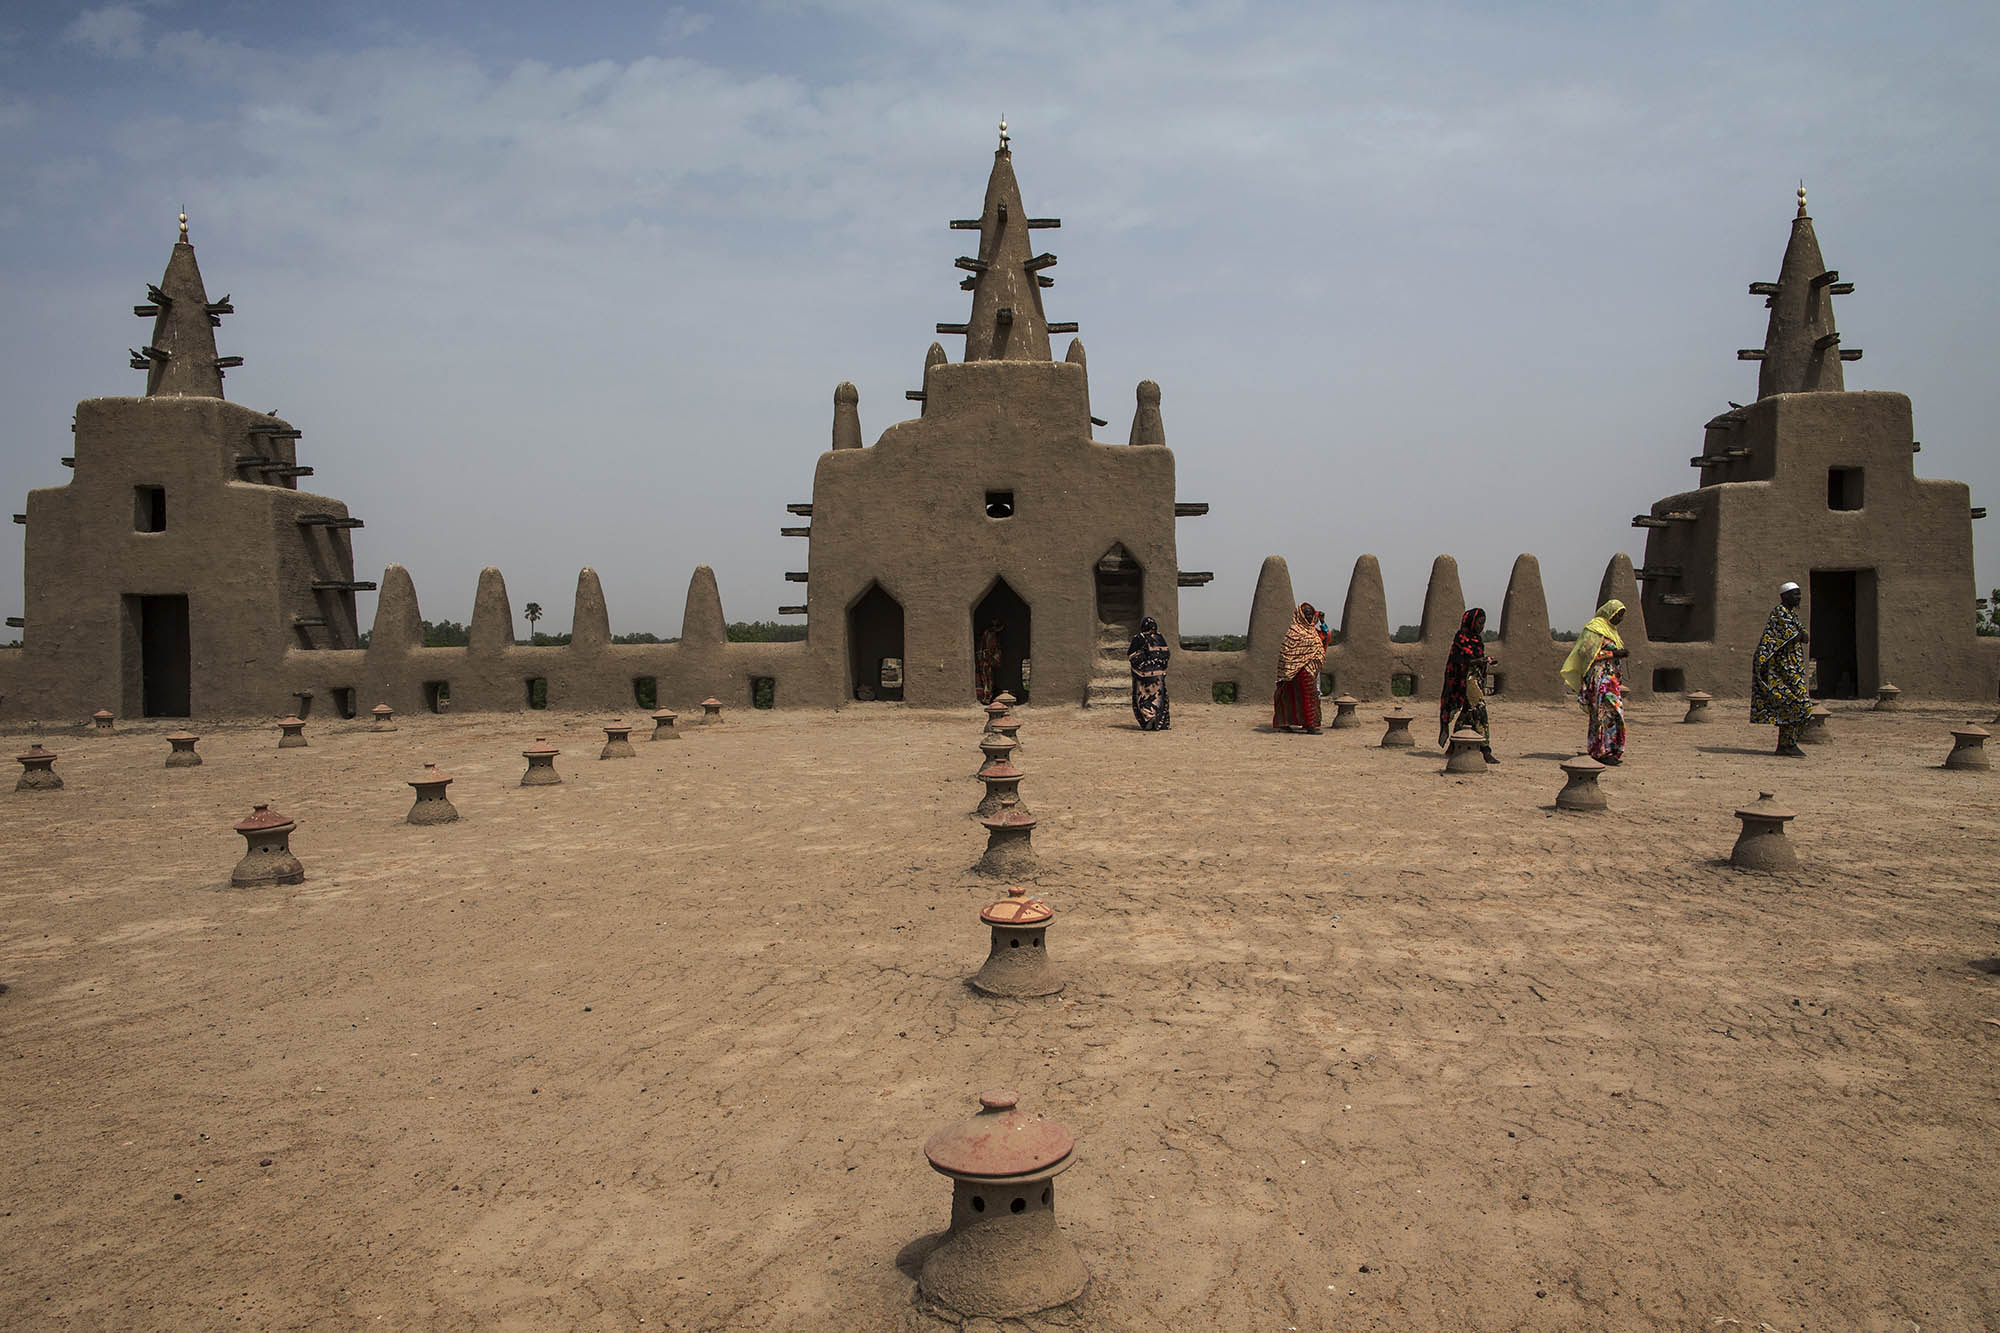 La Grande mosquée de Djenné, patrimoine mondial de l'UNESCO depuis 1988. Photo MINUSMA/Marco Dormino